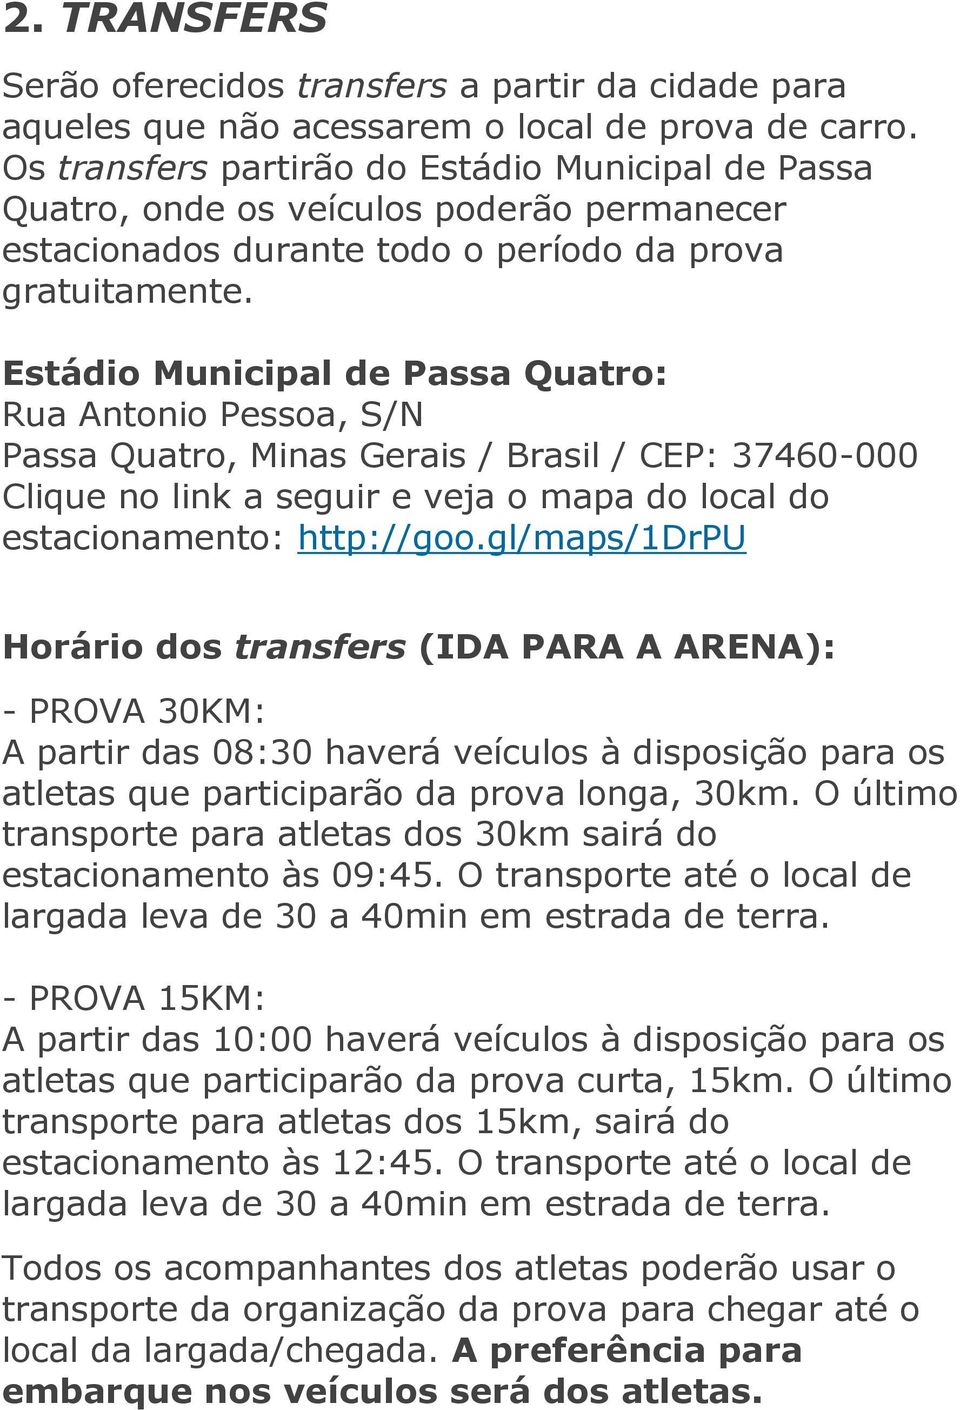 Estádio Municipal de Passa Quatro: Rua Antonio Pessoa, S/N Passa Quatro, Minas Gerais / Brasil / CEP: 37460-000 Clique no link a seguir e veja o mapa do local do estacionamento: http://goo.